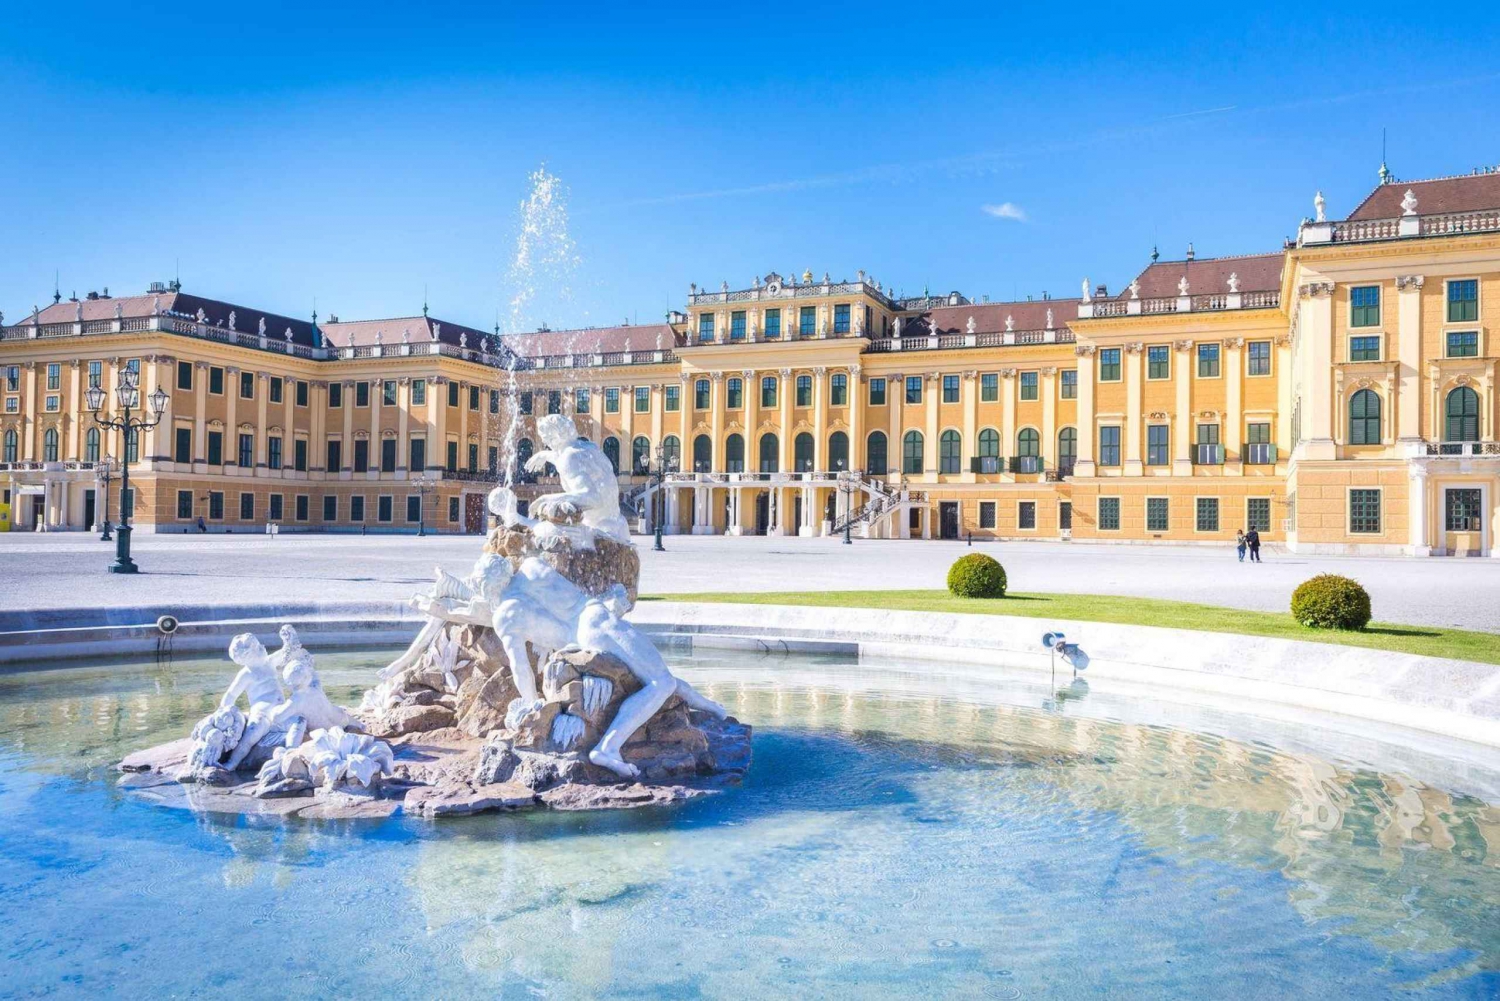 Vienne : billet impérial pour le château de Schonbrunn et visite audio (ENG)